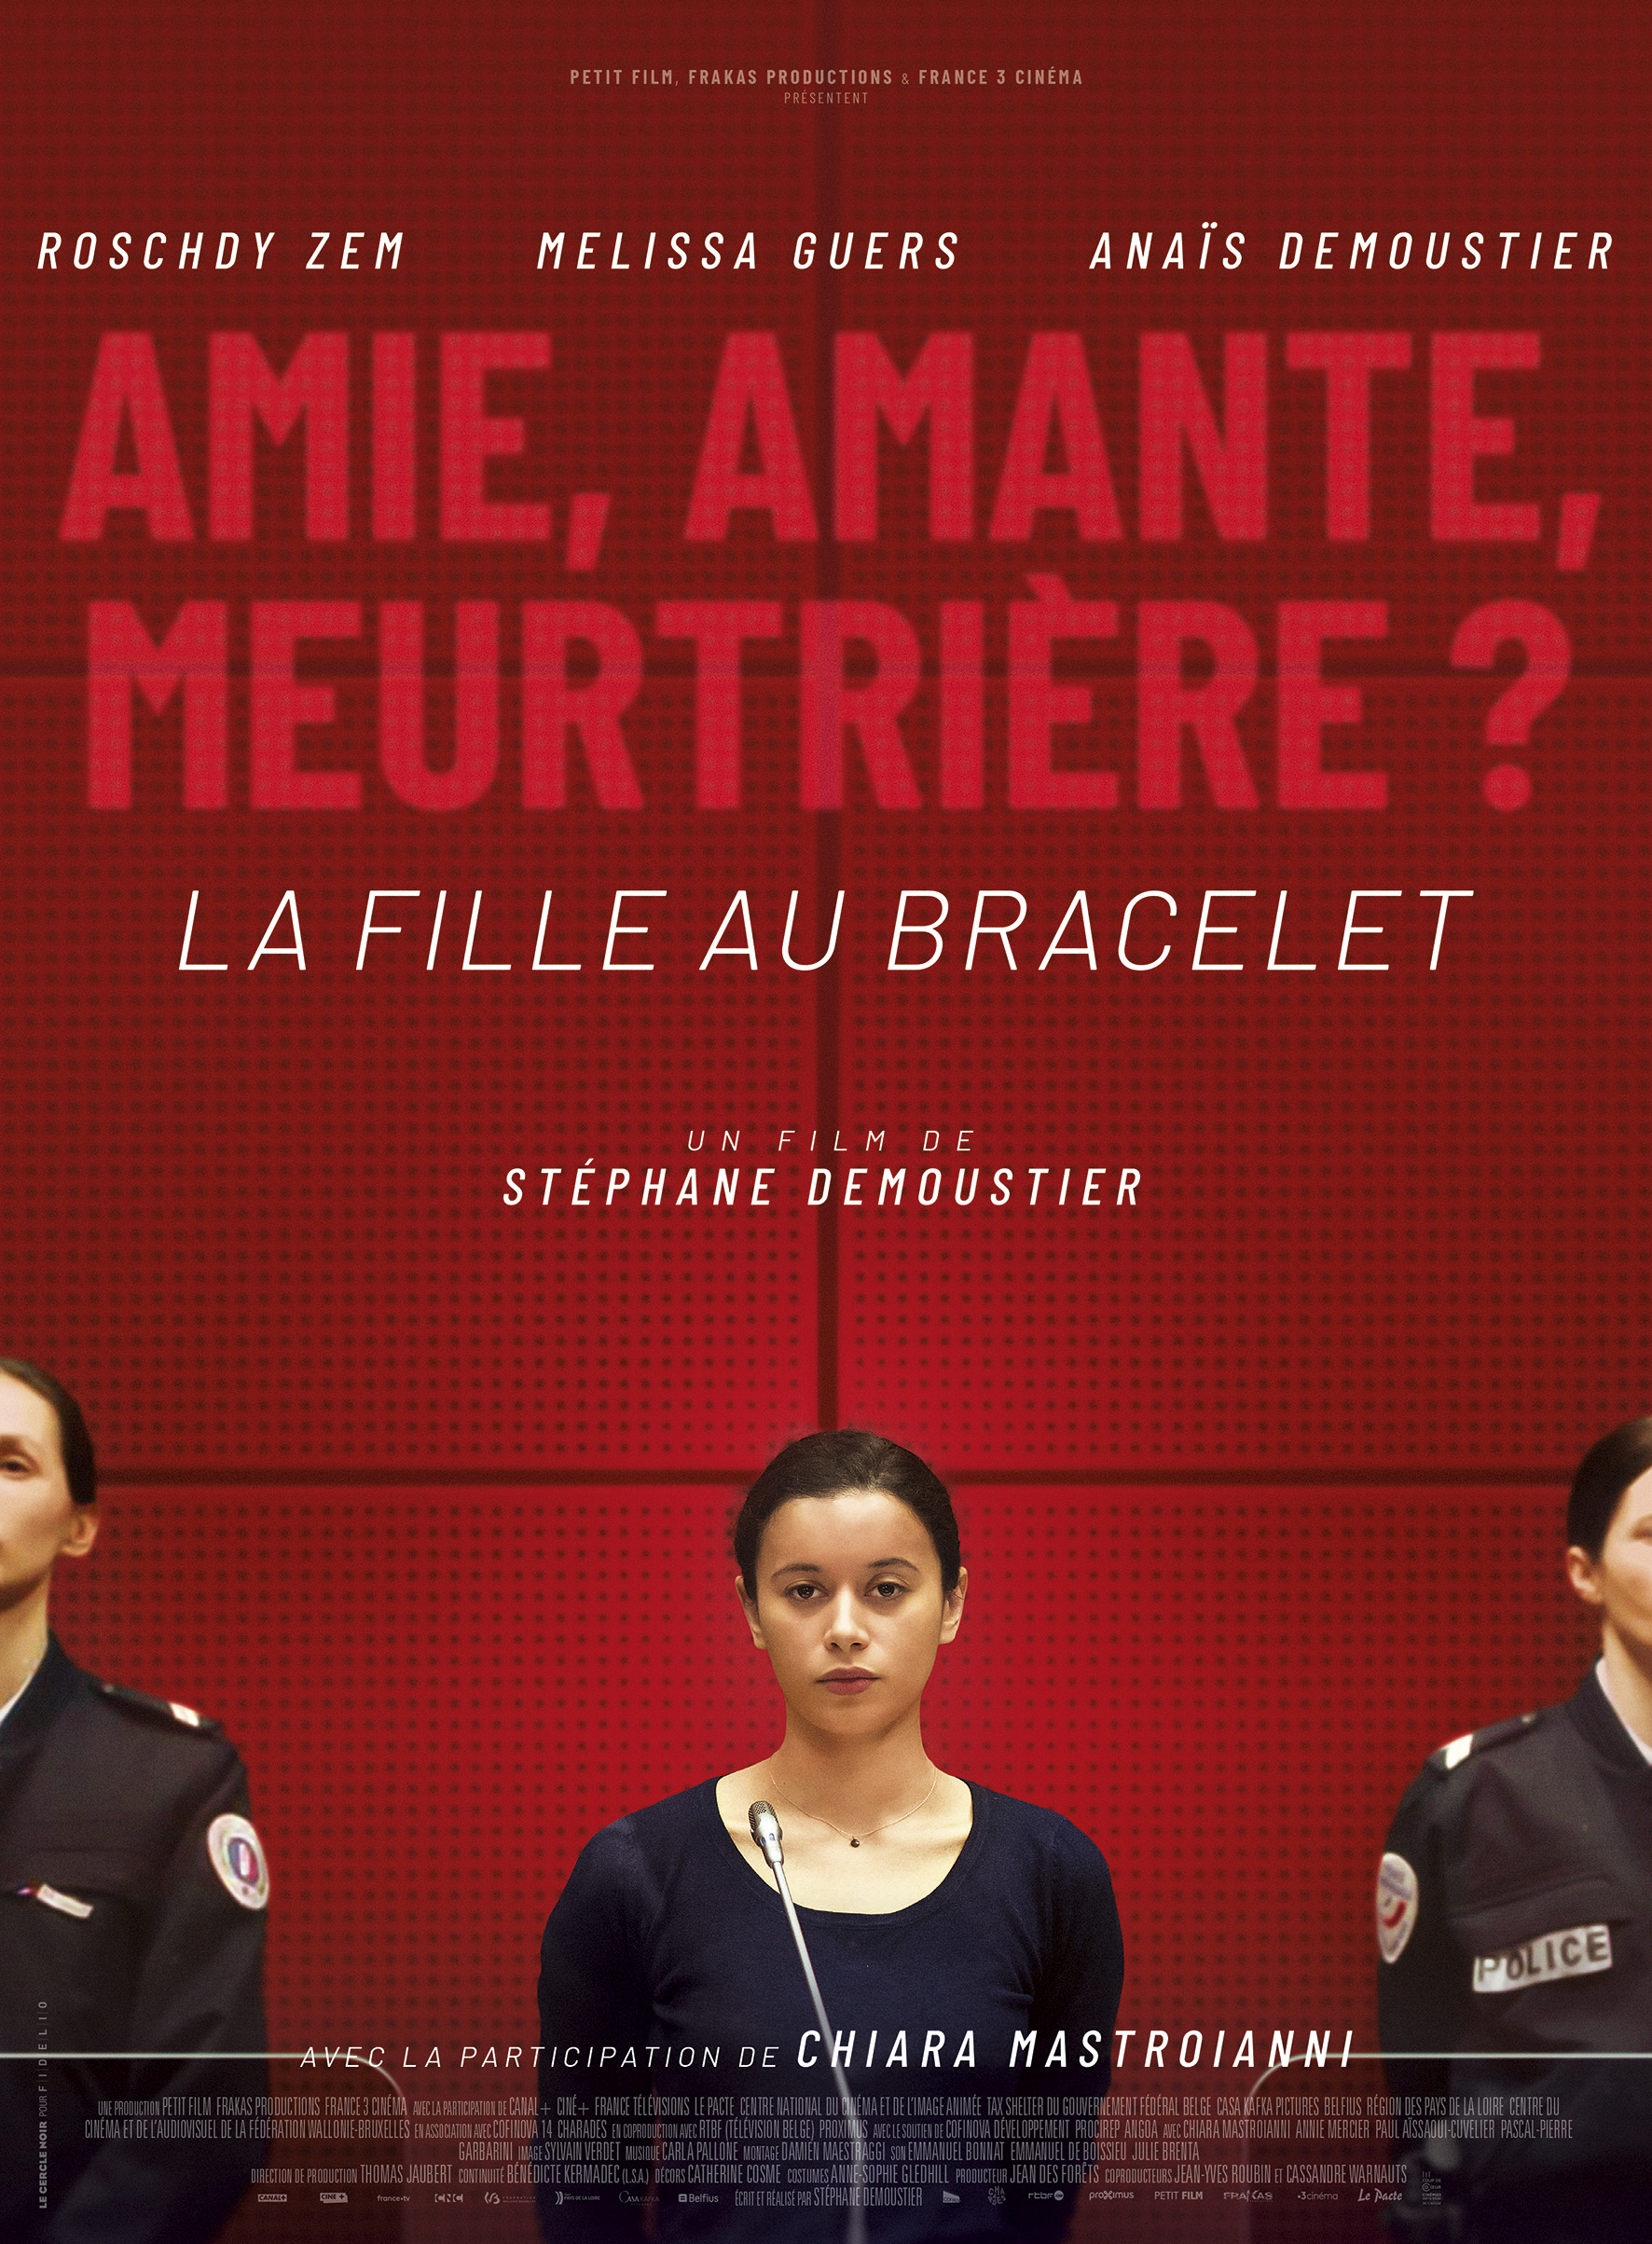 Mega Sized Movie Poster Image for La fille au bracelet 